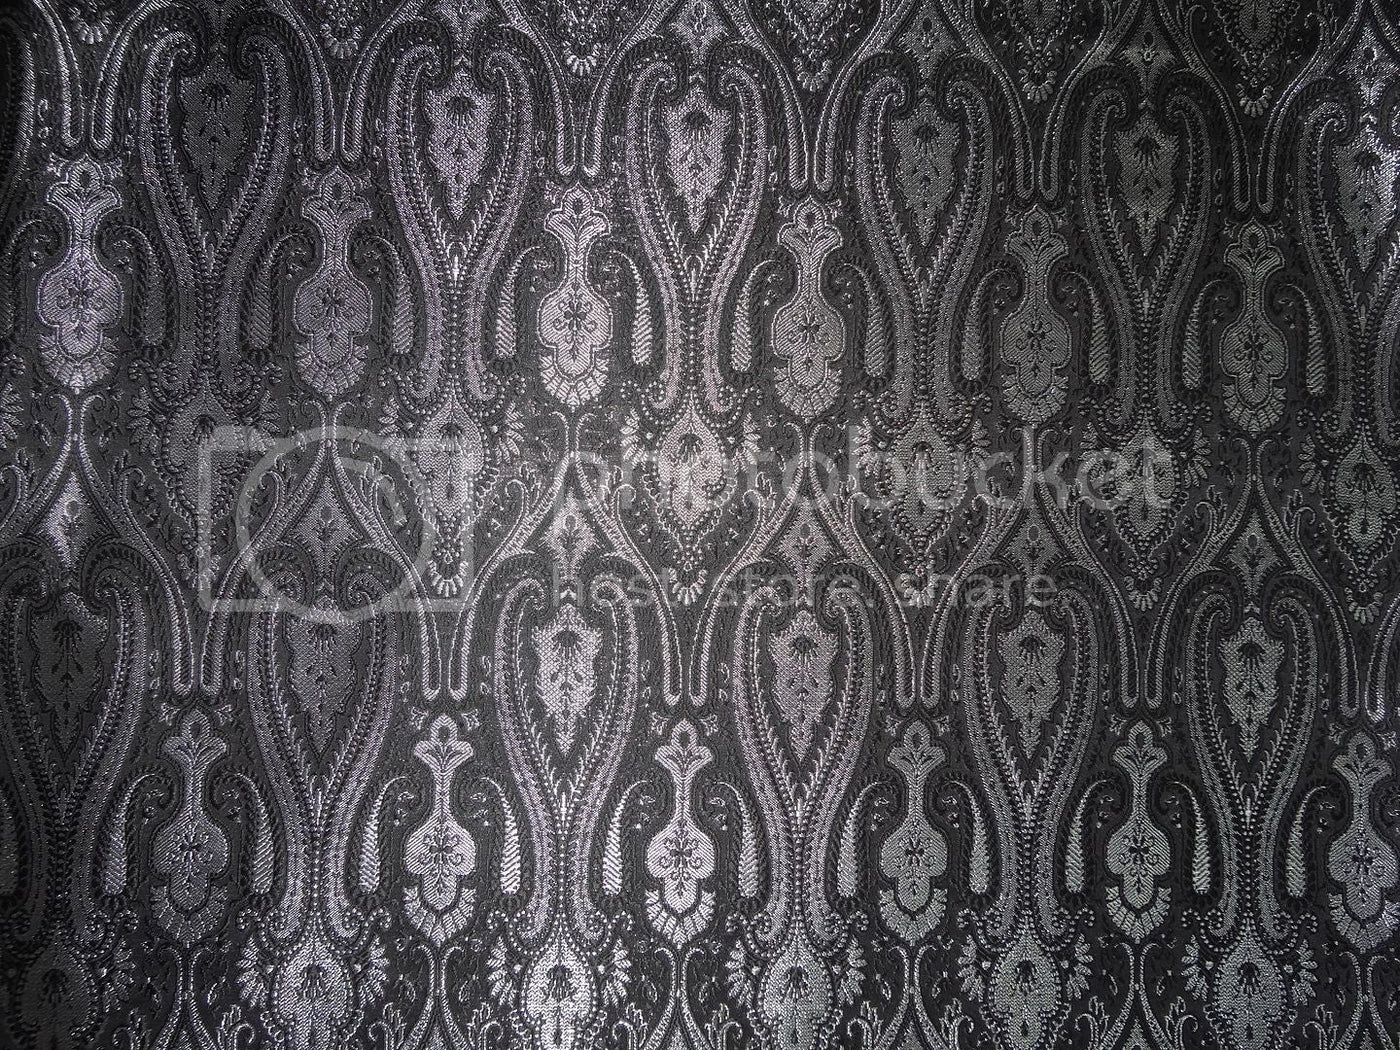 SILK BROCADE FABRIC Black & Metallic Silver color 44" wide BRO250[4]